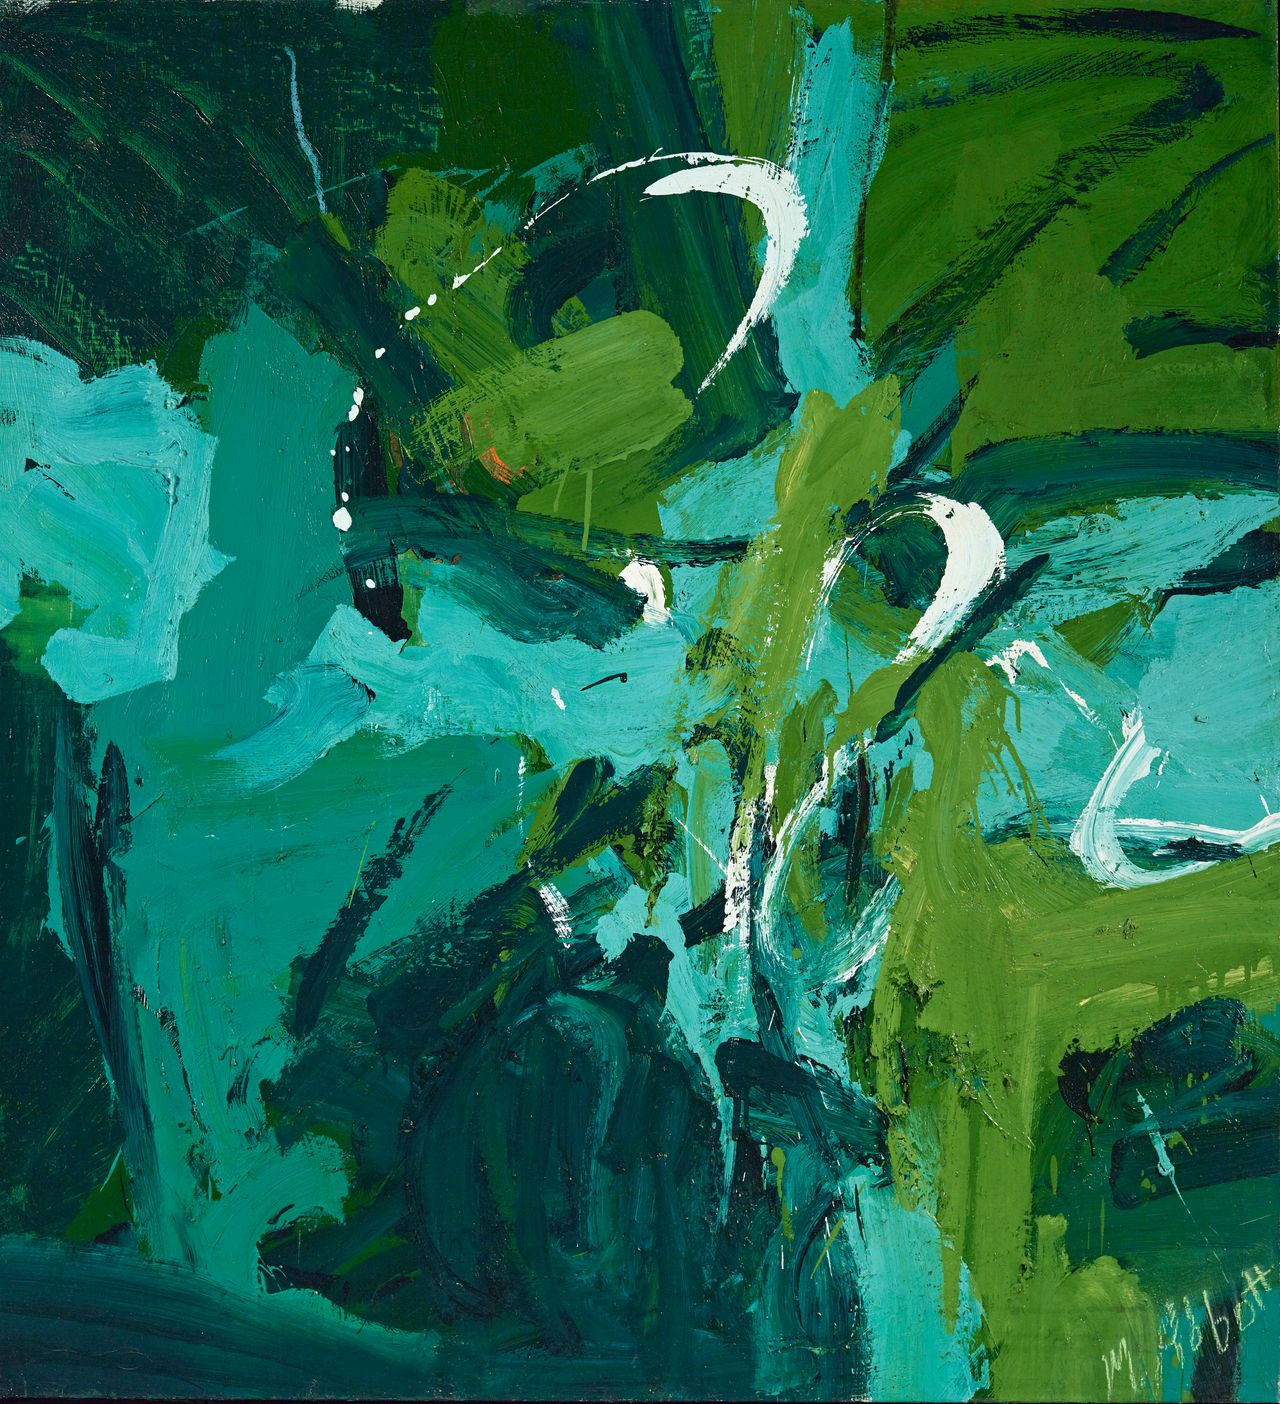 Mary Abbott, "All Green," 1954